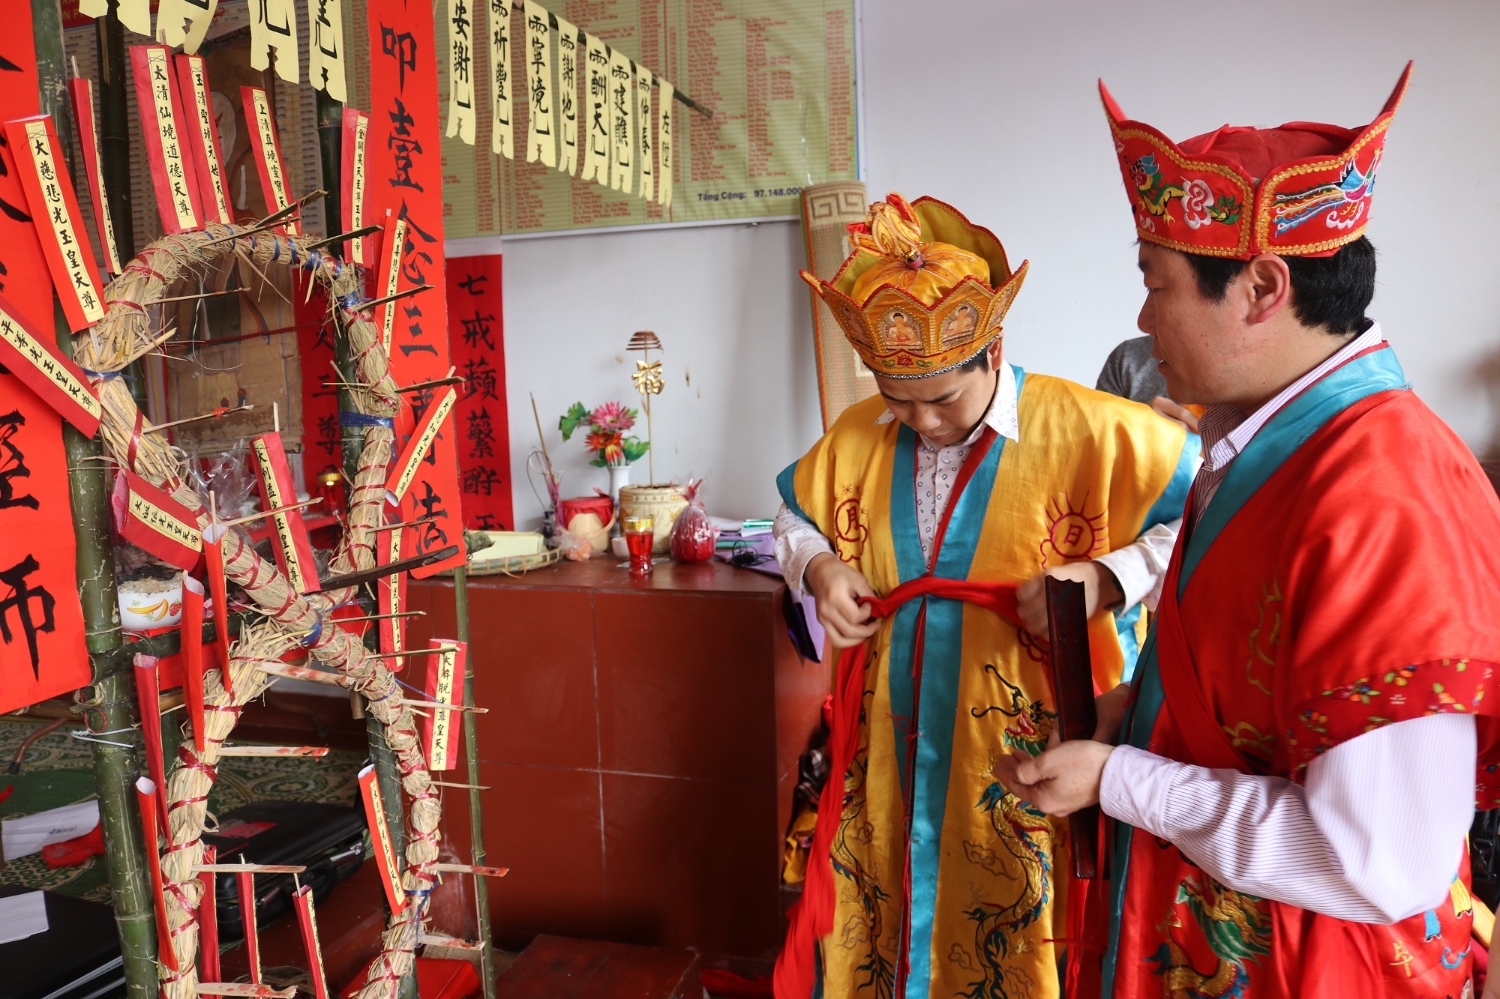 Trải nghiệm văn hoá bản địa qua lễ hội miếu Long Vương với nghi thức thả đèn hoa đăng trên sông Bắc Vọng